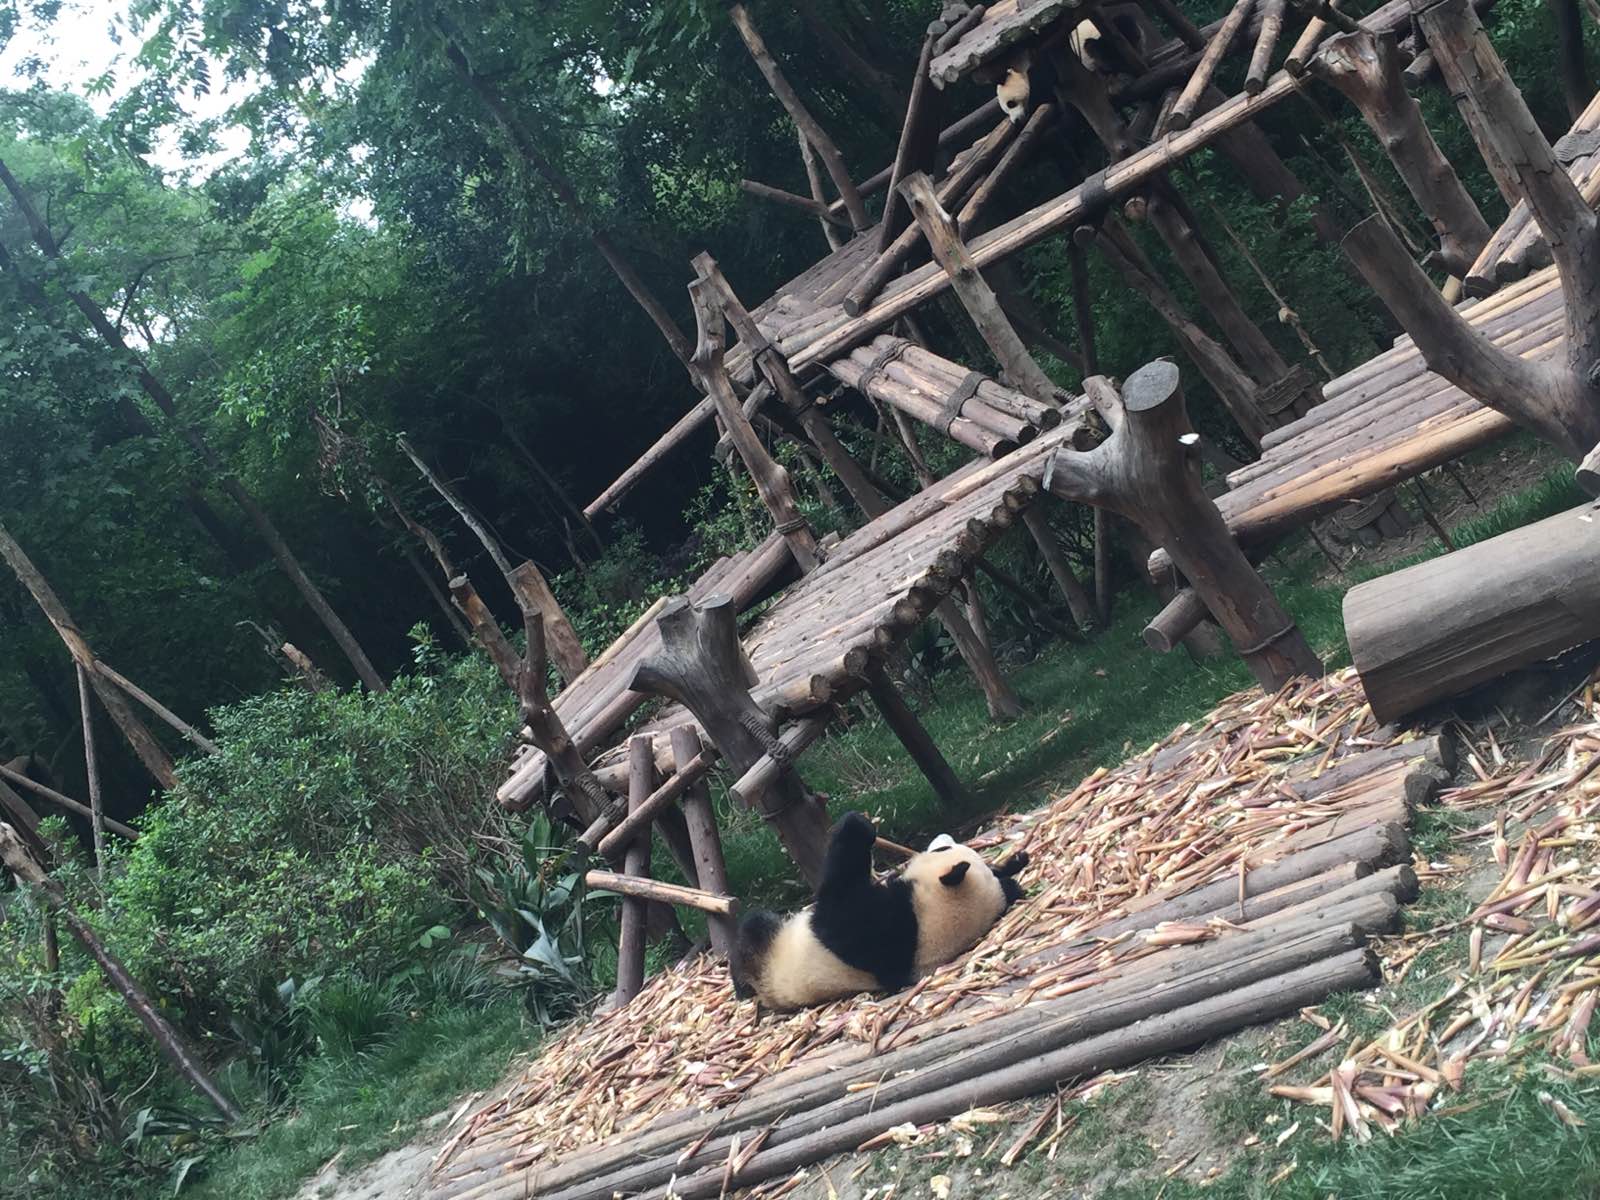 熊猫宝宝们吃饱睡睡饱吃，真的非常萌萌哒。从市区开车过去大概一个小时左右